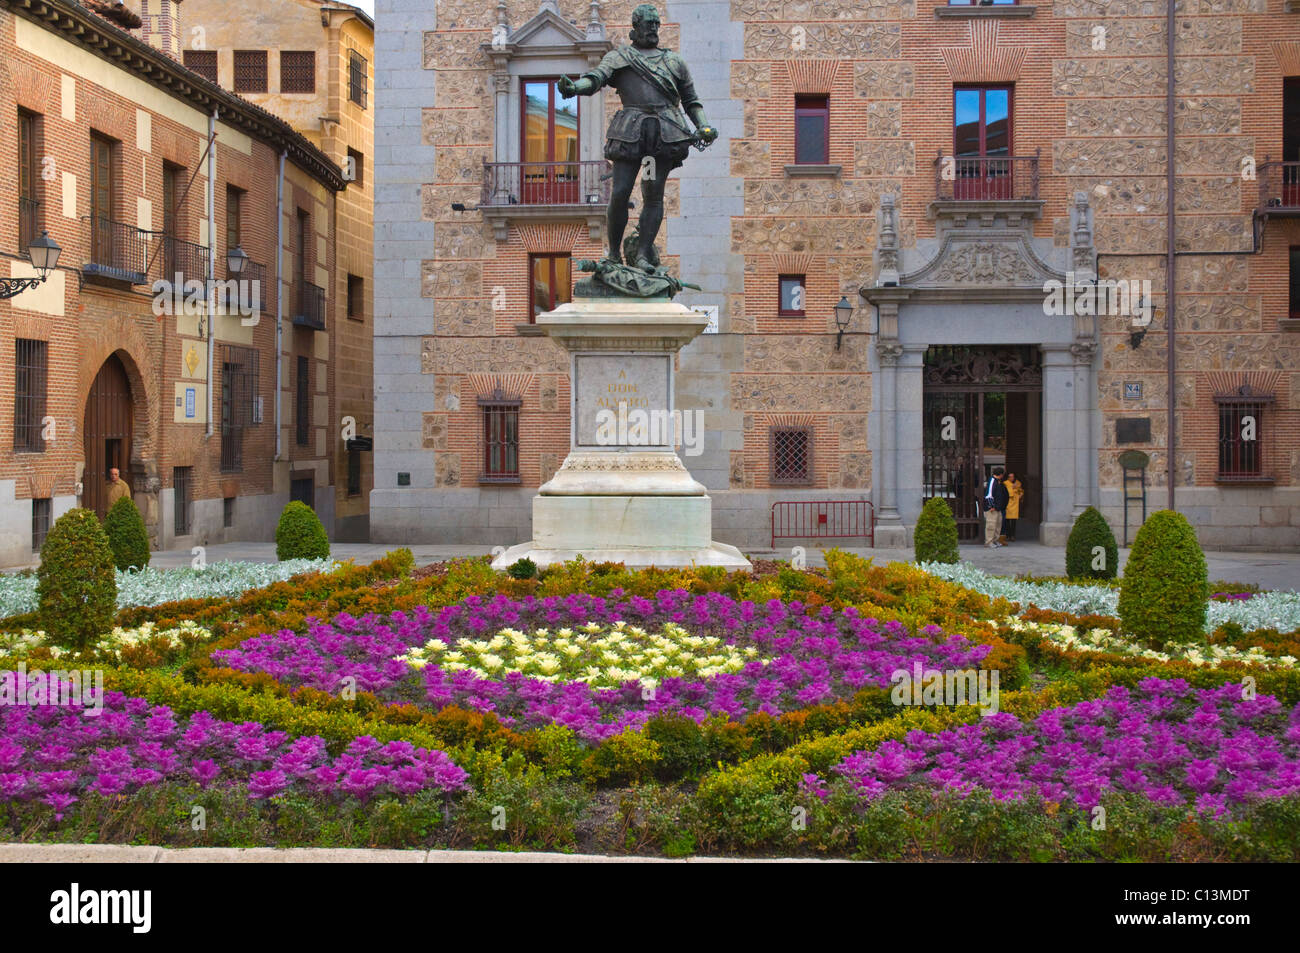 Statue of Don Alvaro de Bazan at Plaza de la Villa square central Madrid Spain Europe Stock Photo